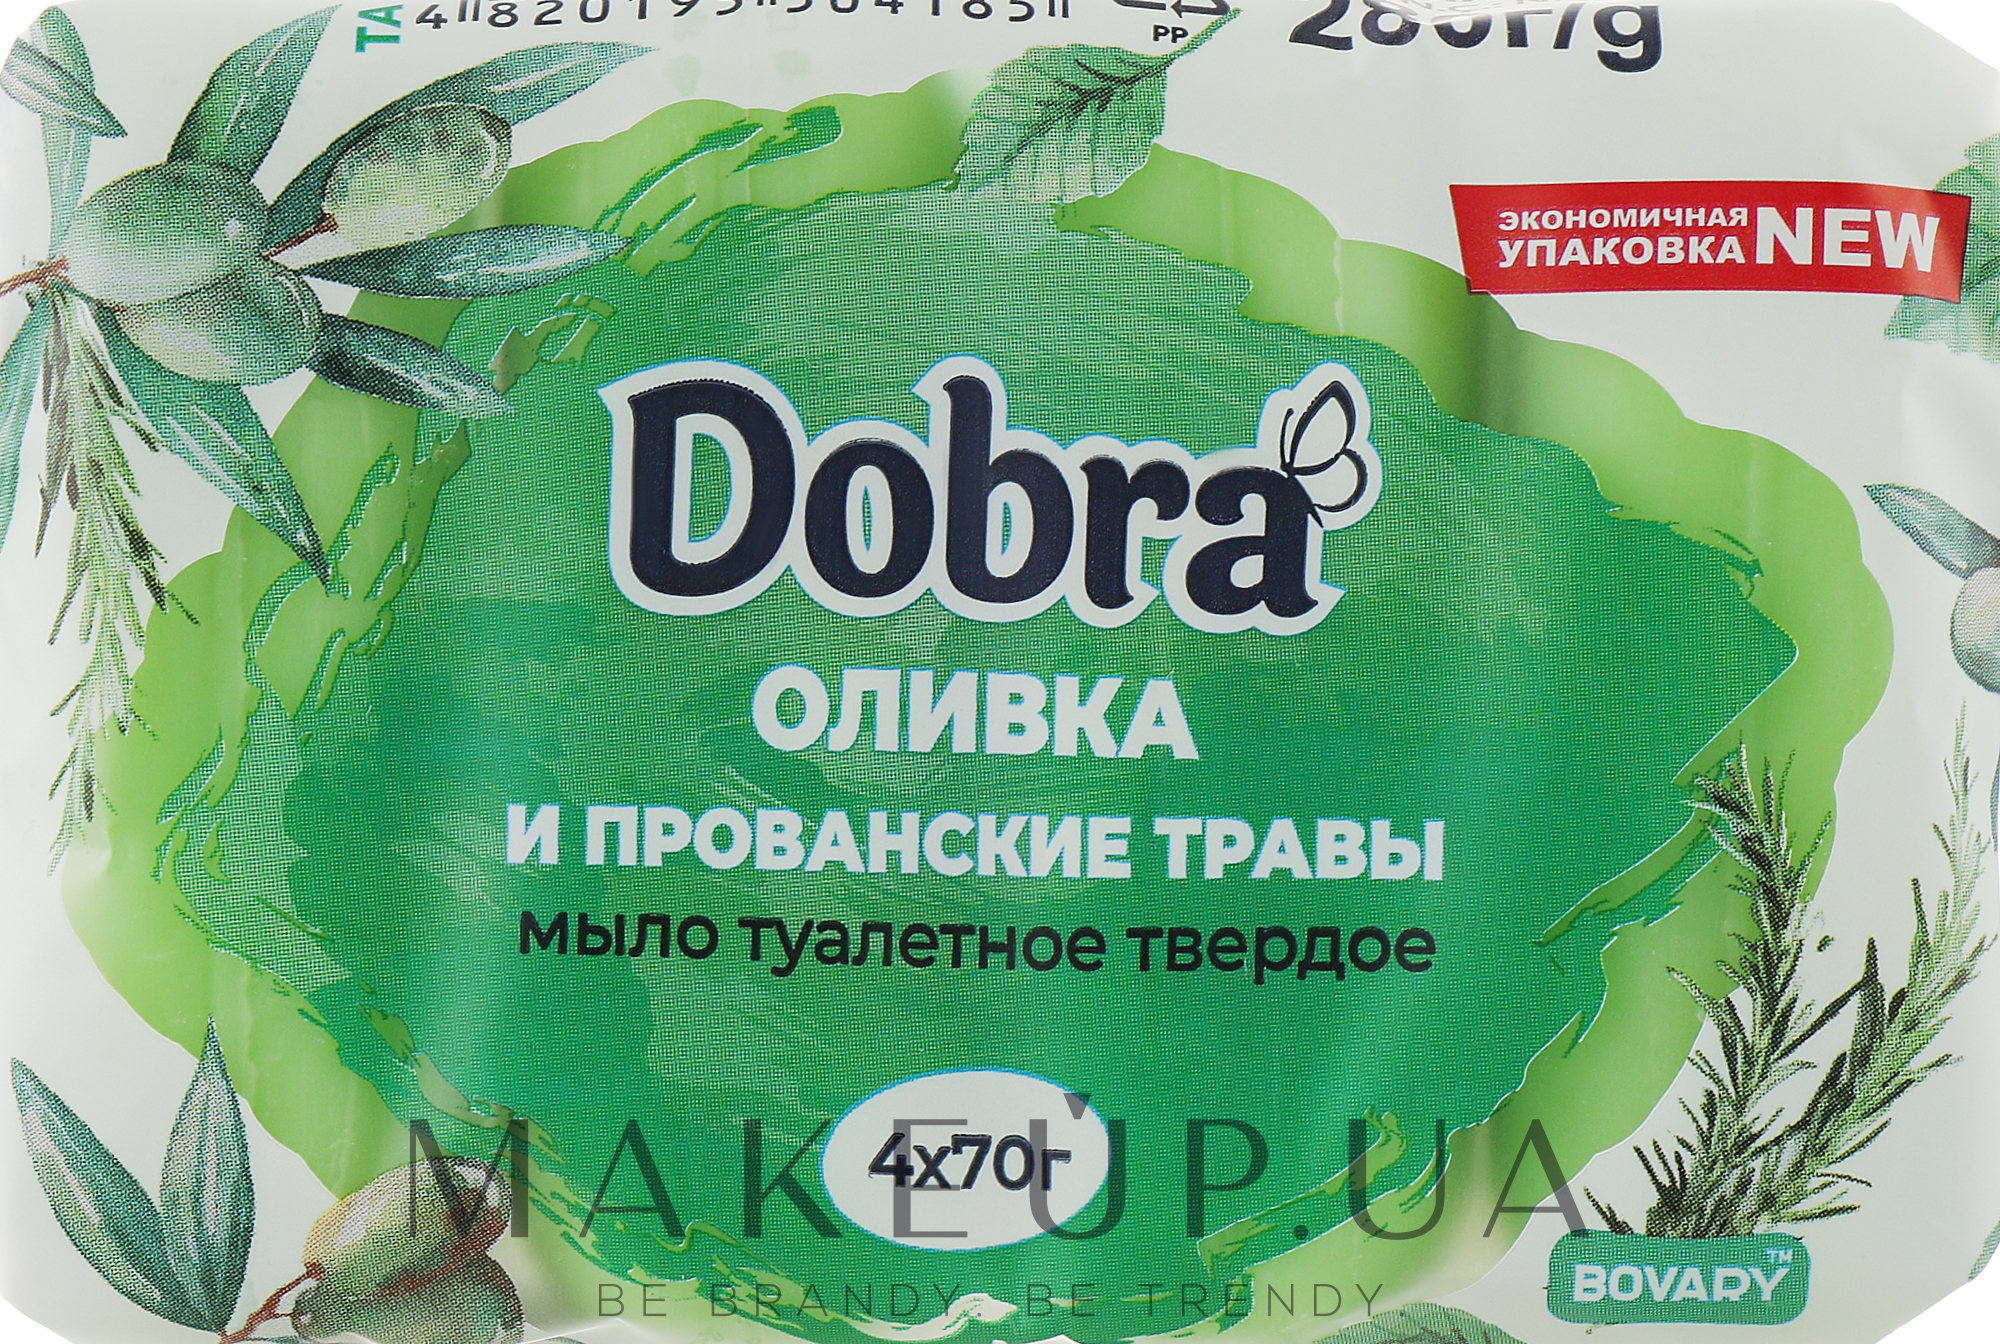 Мыло туалетное "Оливка и прованские травы" - Мыловаренные традиции Dobra Bovary — фото 4x70g